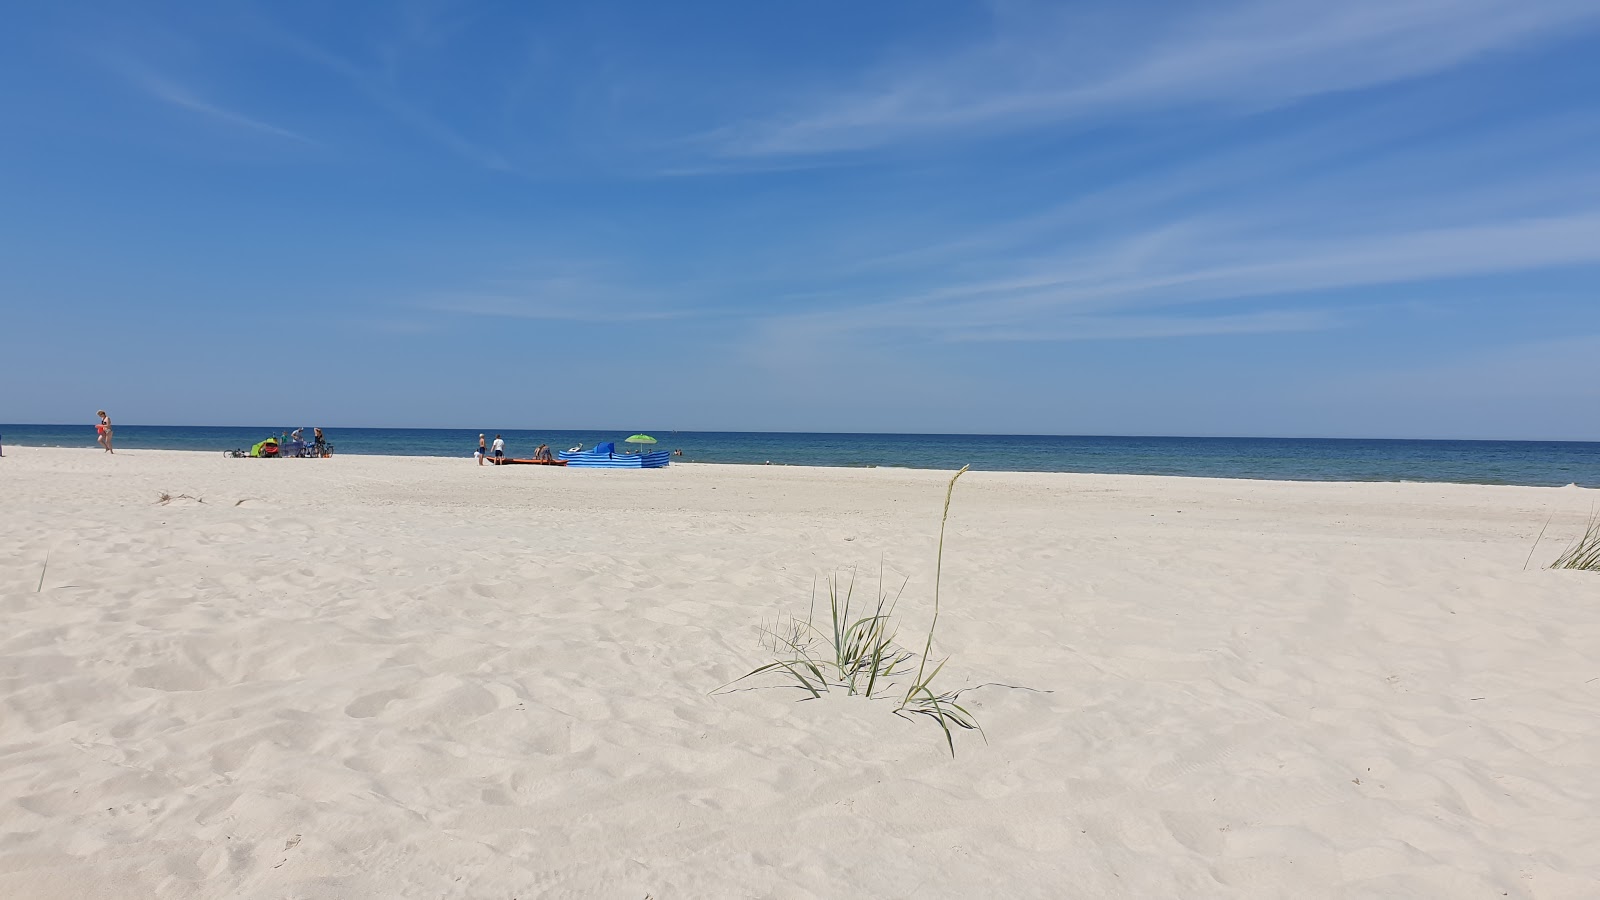 Fotografie cu Slayshevo Beach cu o suprafață de nisip fin strălucitor